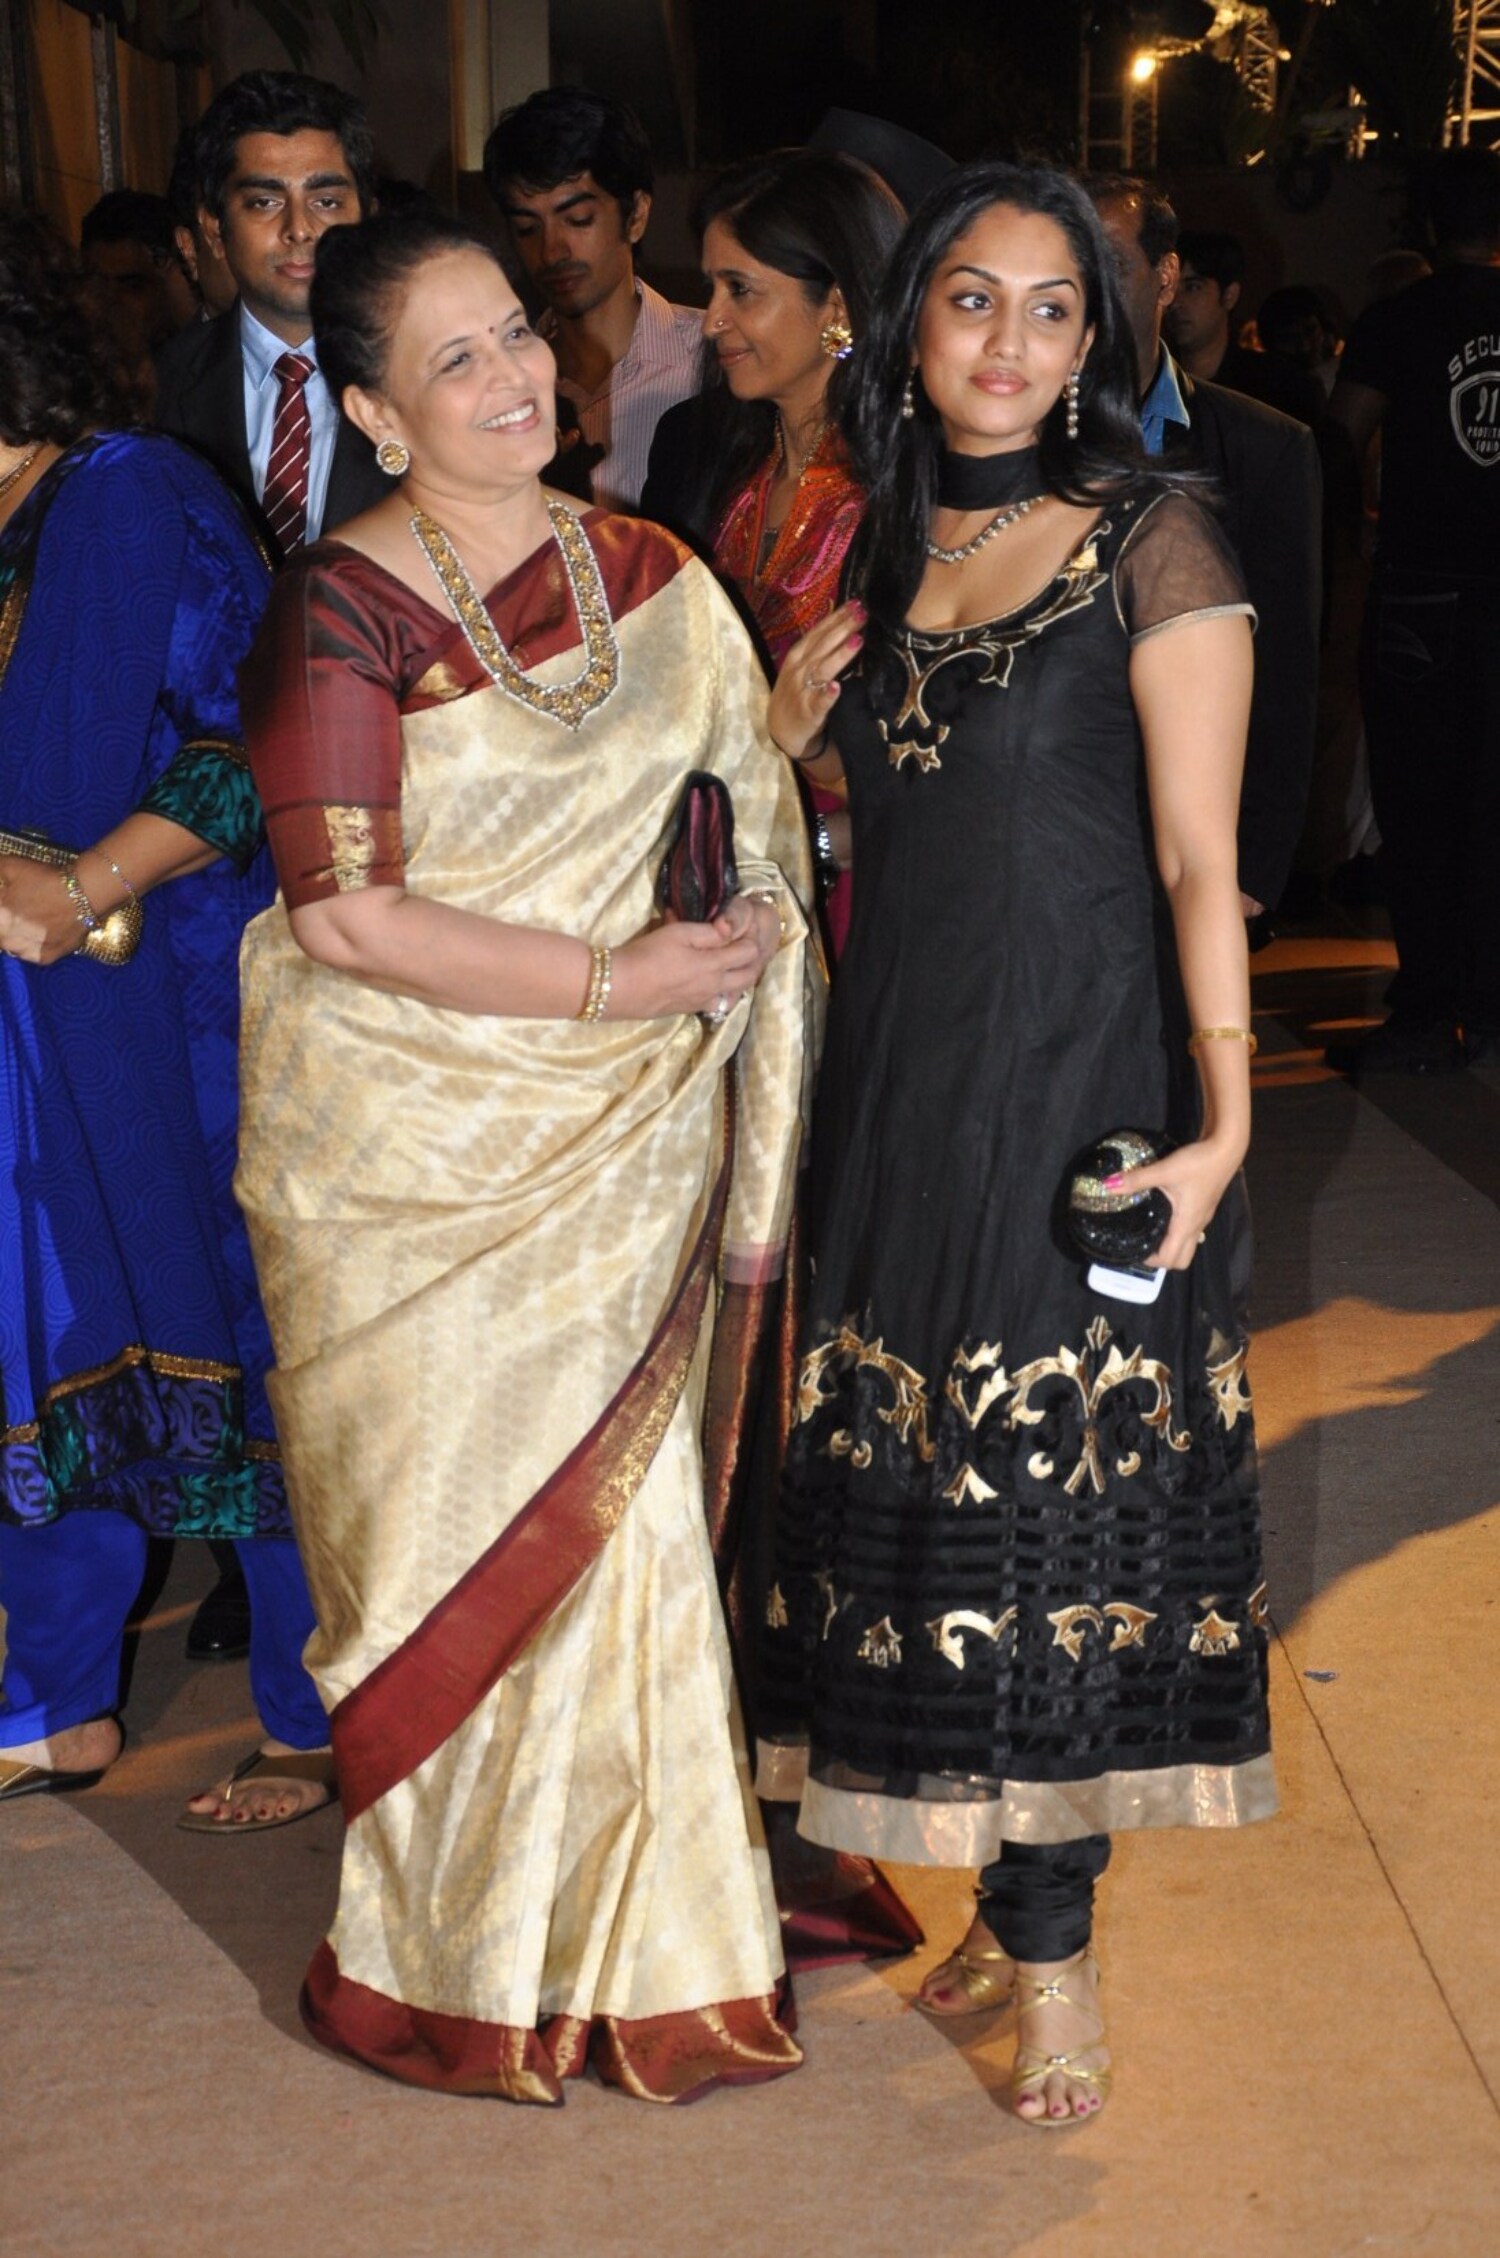  - oz3qcbq4q79nq5uo.D.0.Aishwarya-Rai--s-mother-Vrinda-Rai-with-her-daughter-in-law-Shrima-Rai-at-the-wedding-reception-of-Dheeraj-Deshmukh-in-Mumbai